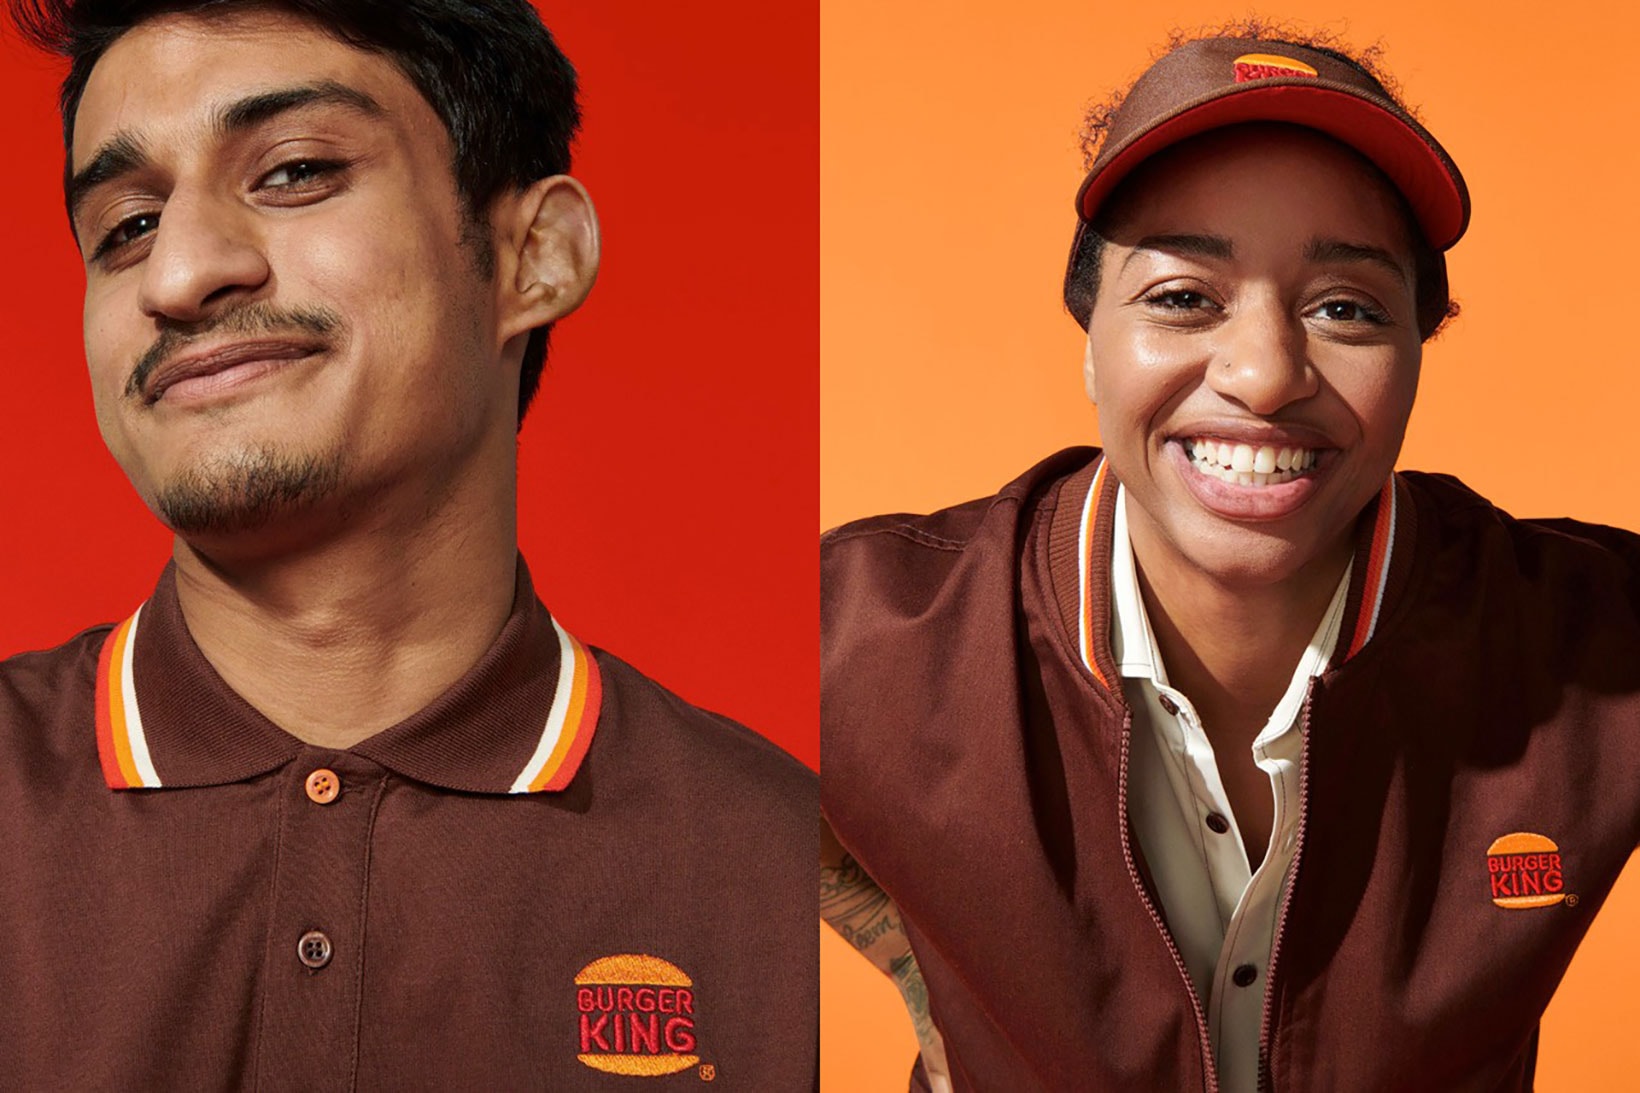 burger king rebrand new minimal design logo staff uniform hat shirt brown orange